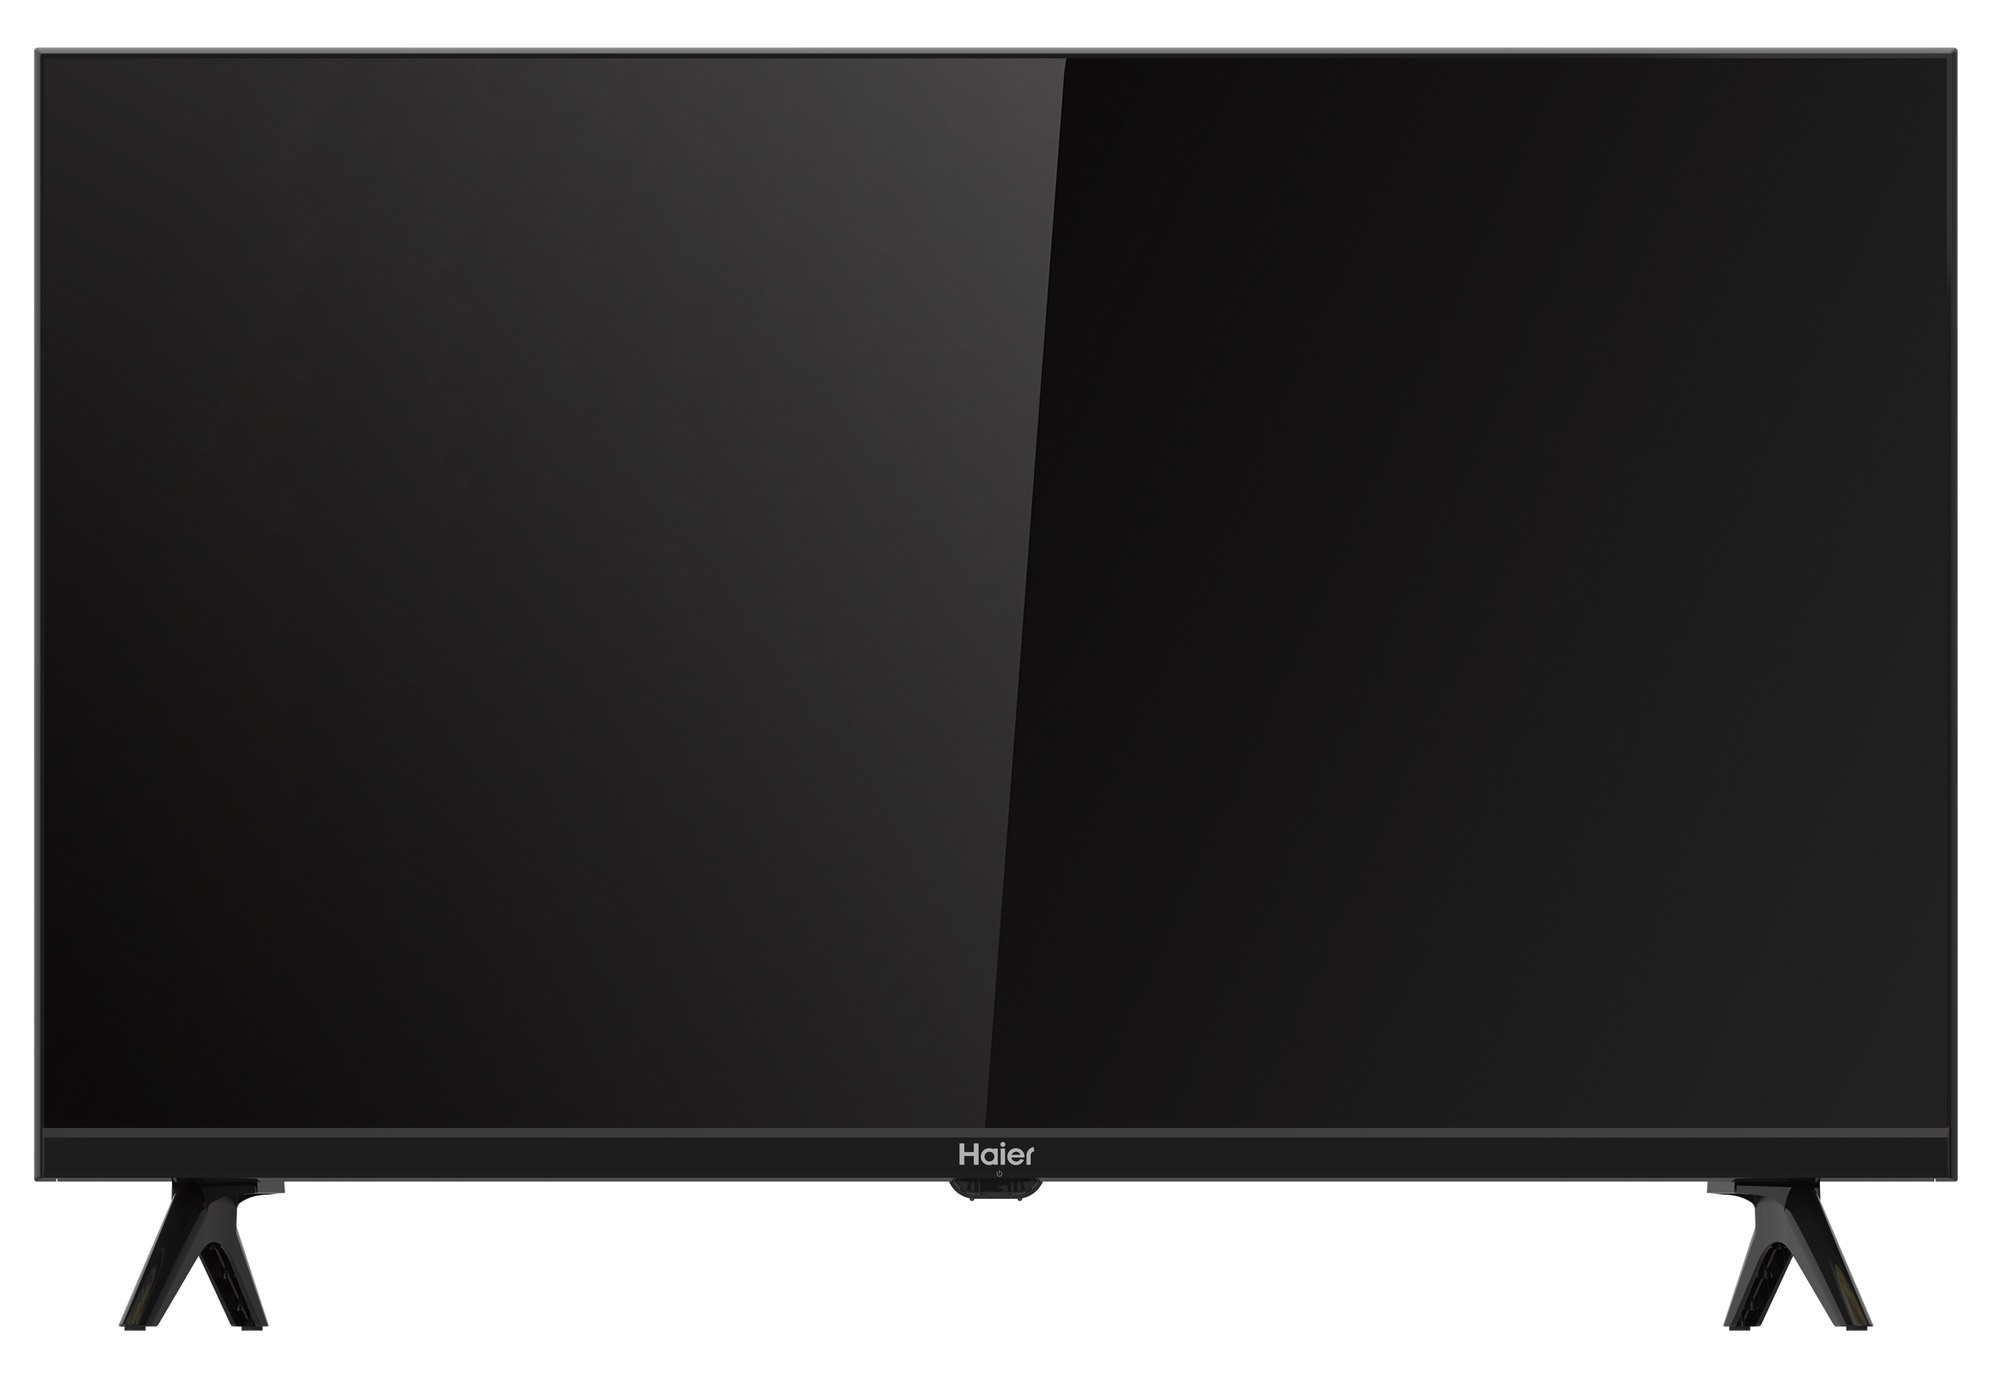 Haier 32 smart tv s1 цены. Haier s1 32 телевизор. Телевизор Haier 43 Smart TV s1 43" 4k UHD, черный. ТВ Haier 32 Smart TV s1. Телевизор Haier 32 Smart TV s1 32 дюйма ножки.